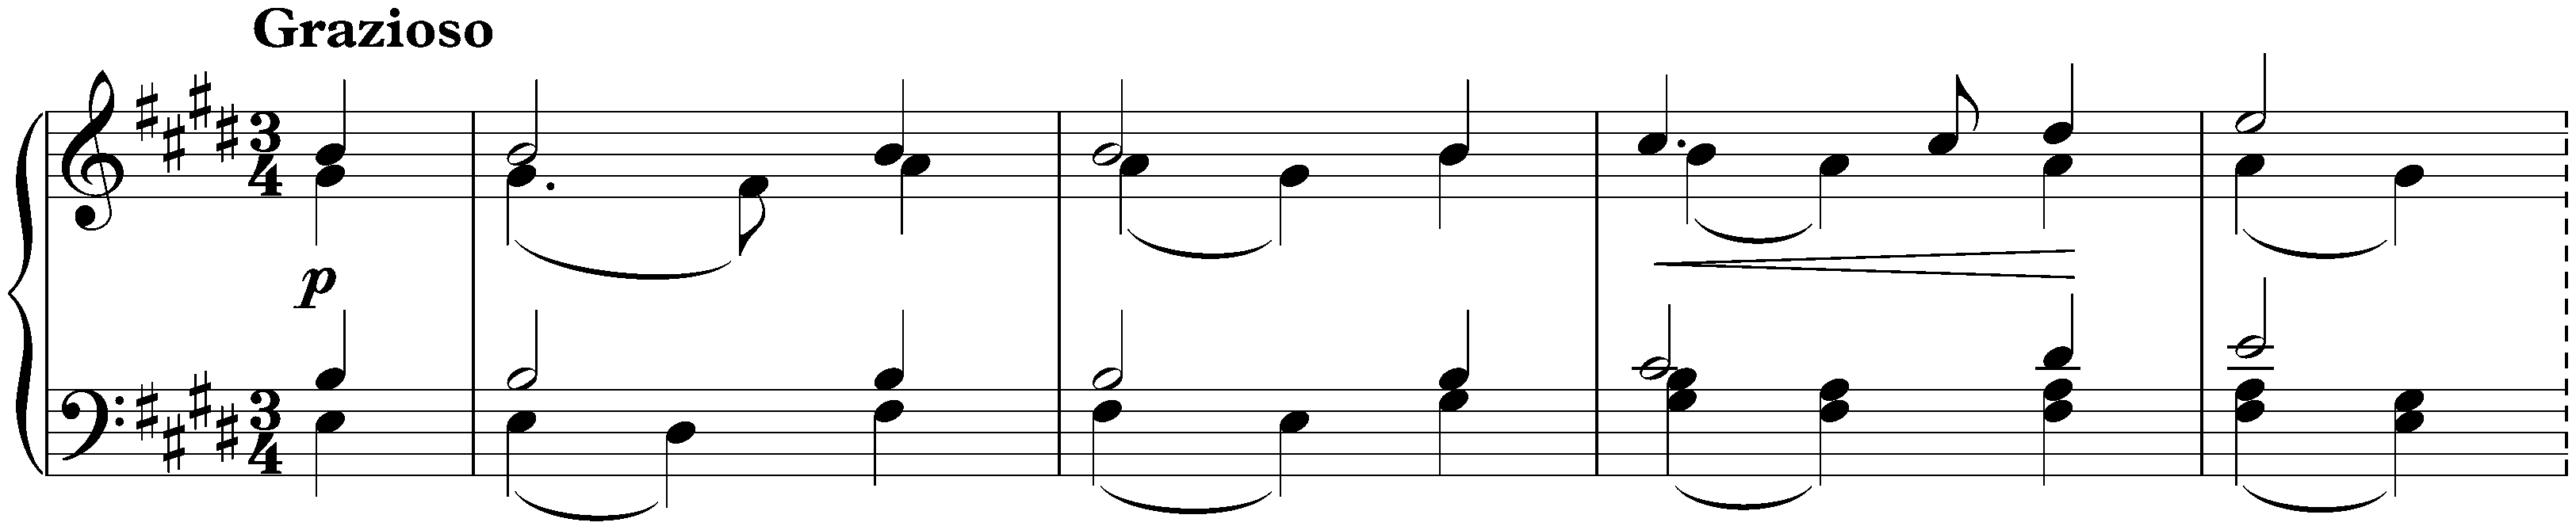 Sixteen Waltzes, op. 39; 5. E major